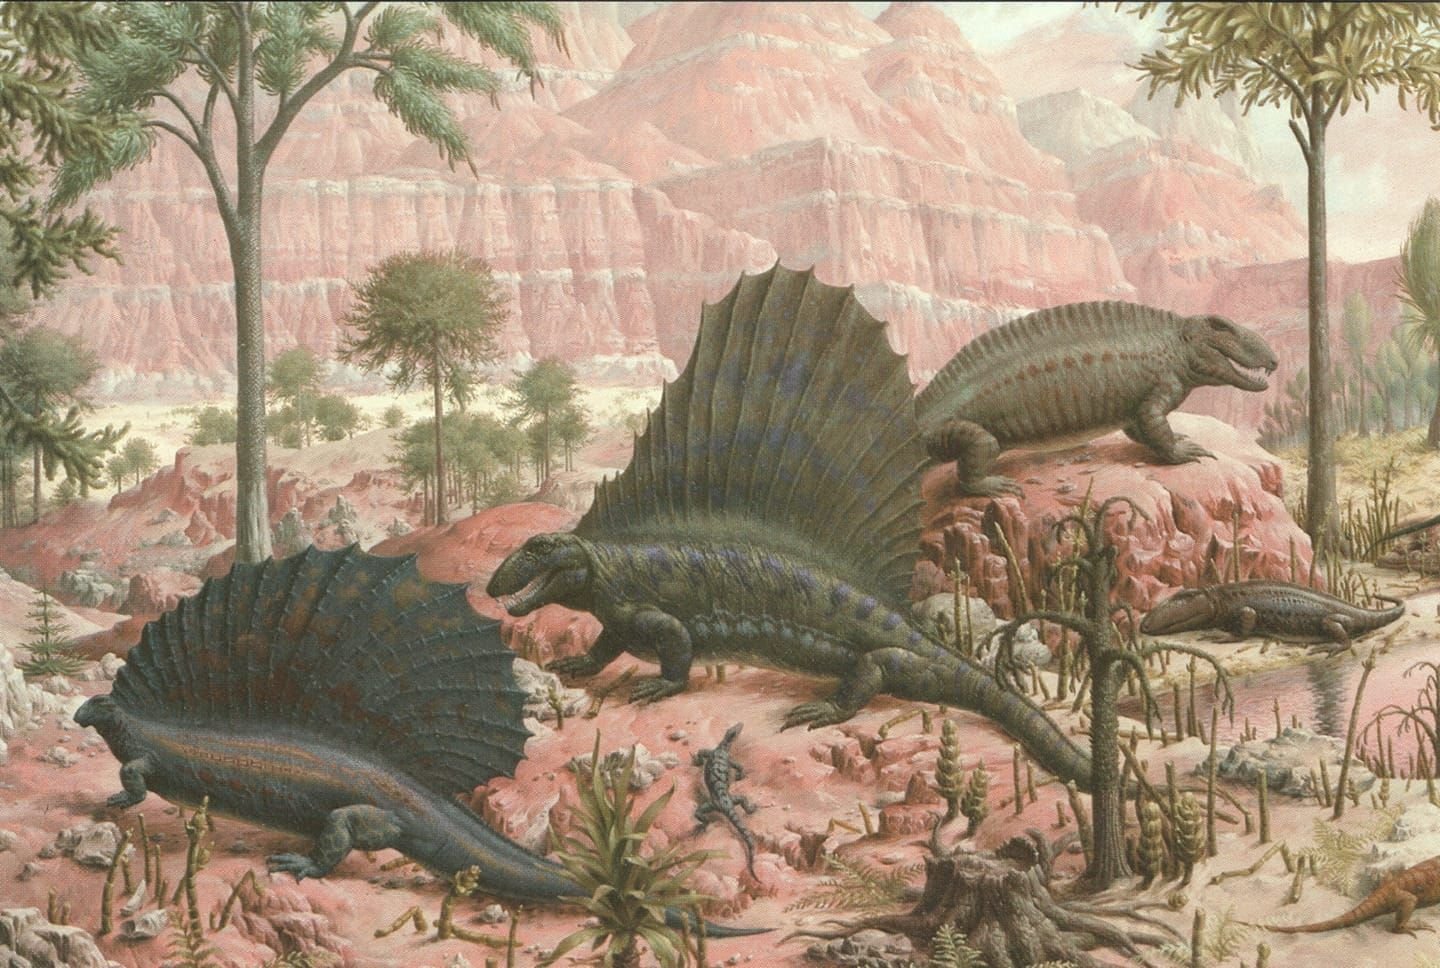 Протерозойская 2 палеозойская 3 мезозойская. Пермский период палеозойской эры. Динозавры палеозойской эры. Пресмыкающиеся Палеозойская Эра. Палеозой, Палеозойская Эра.